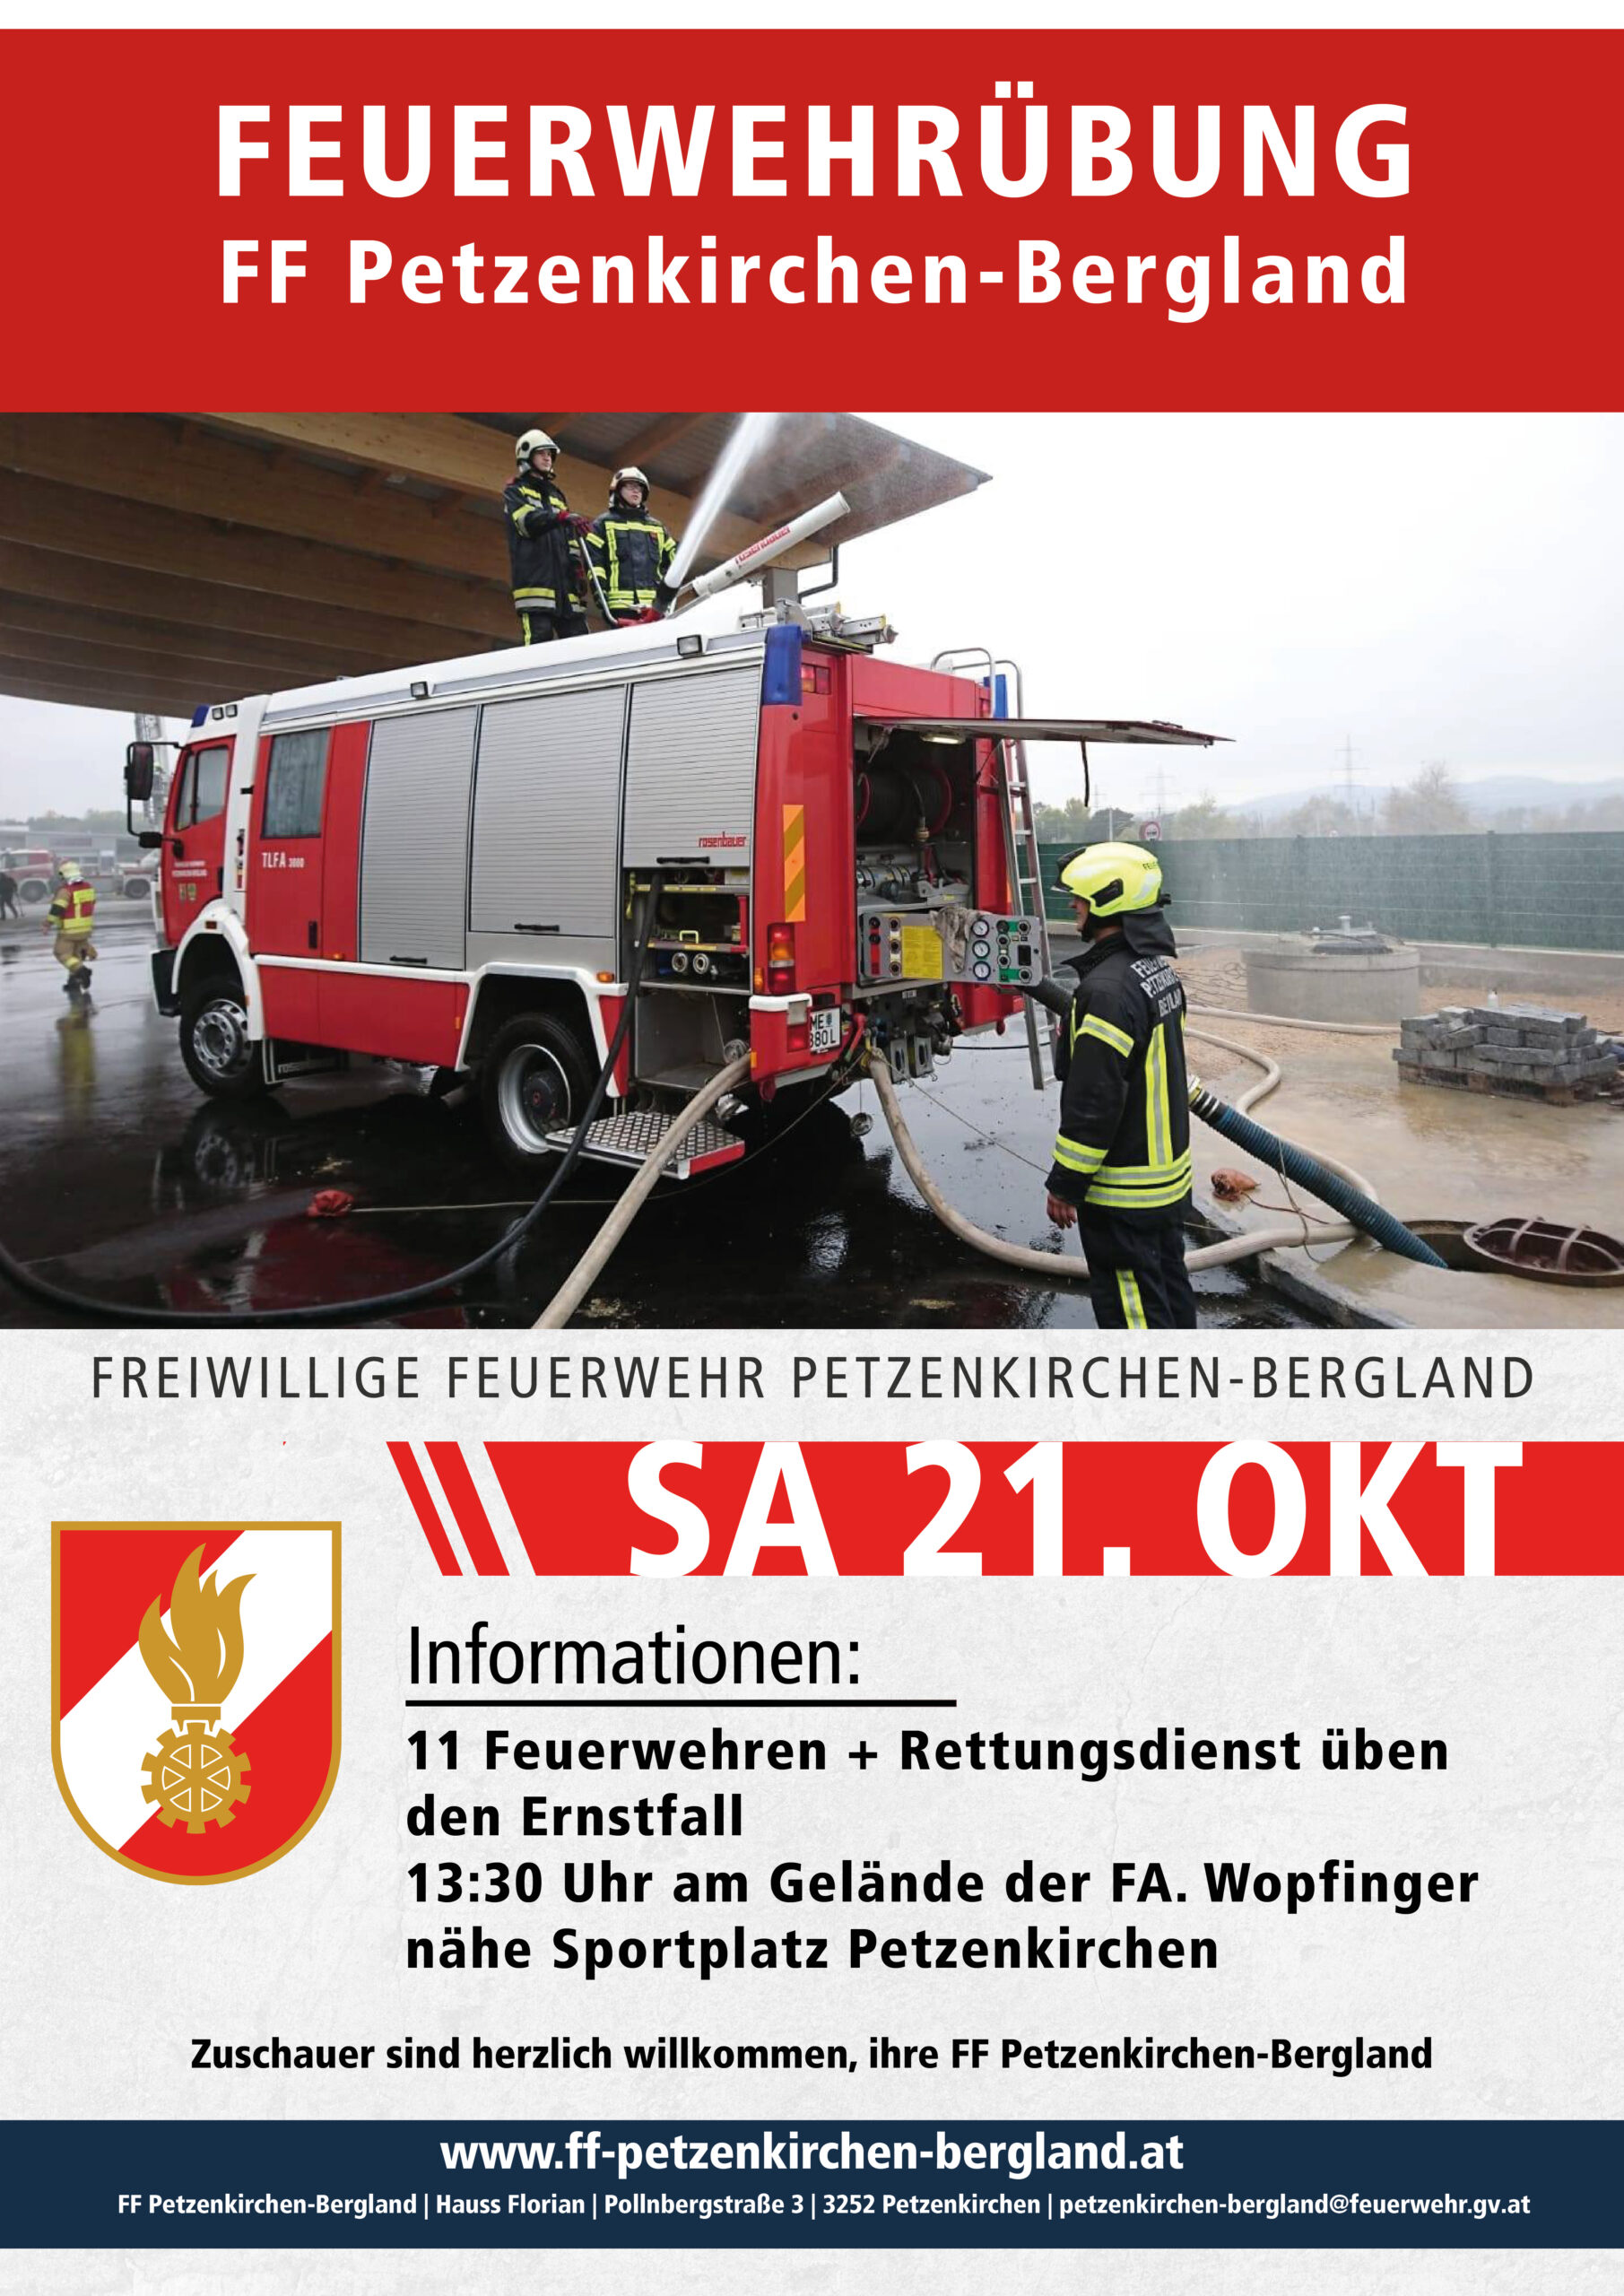 Feuerwehr Einsatzübung in Petzenkirchen